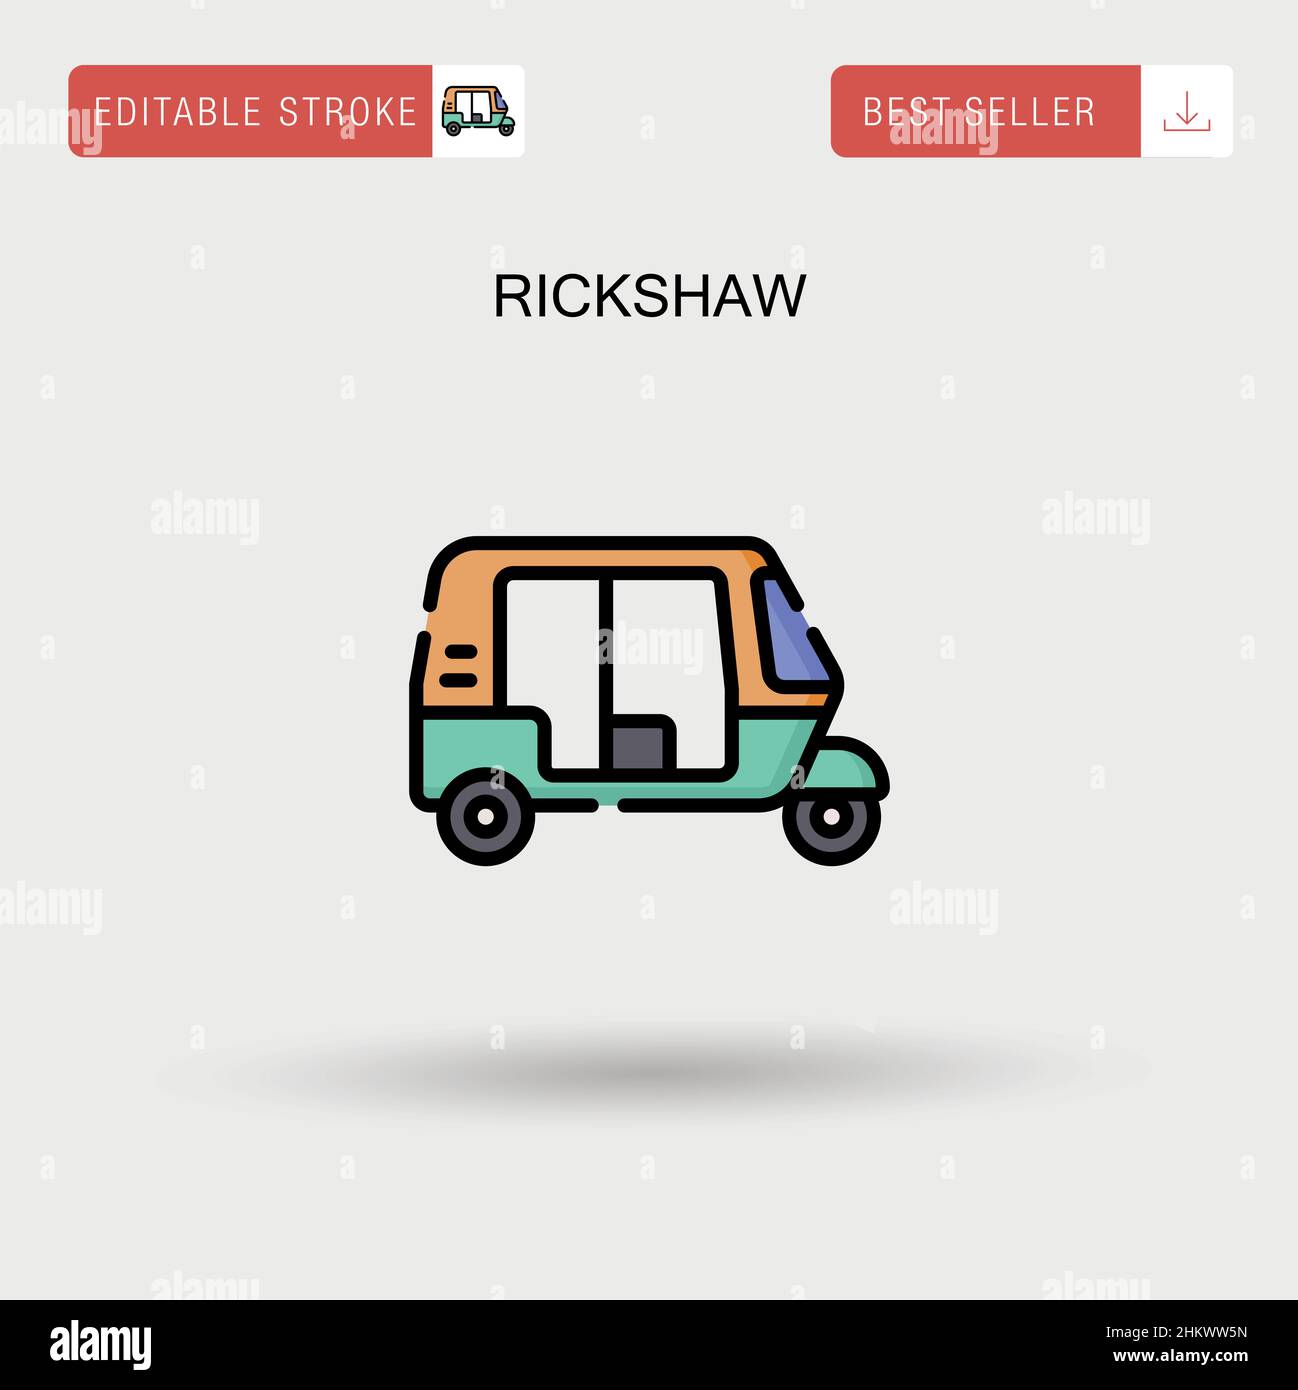 Rickshaw Simple vector icon. Stock Vector